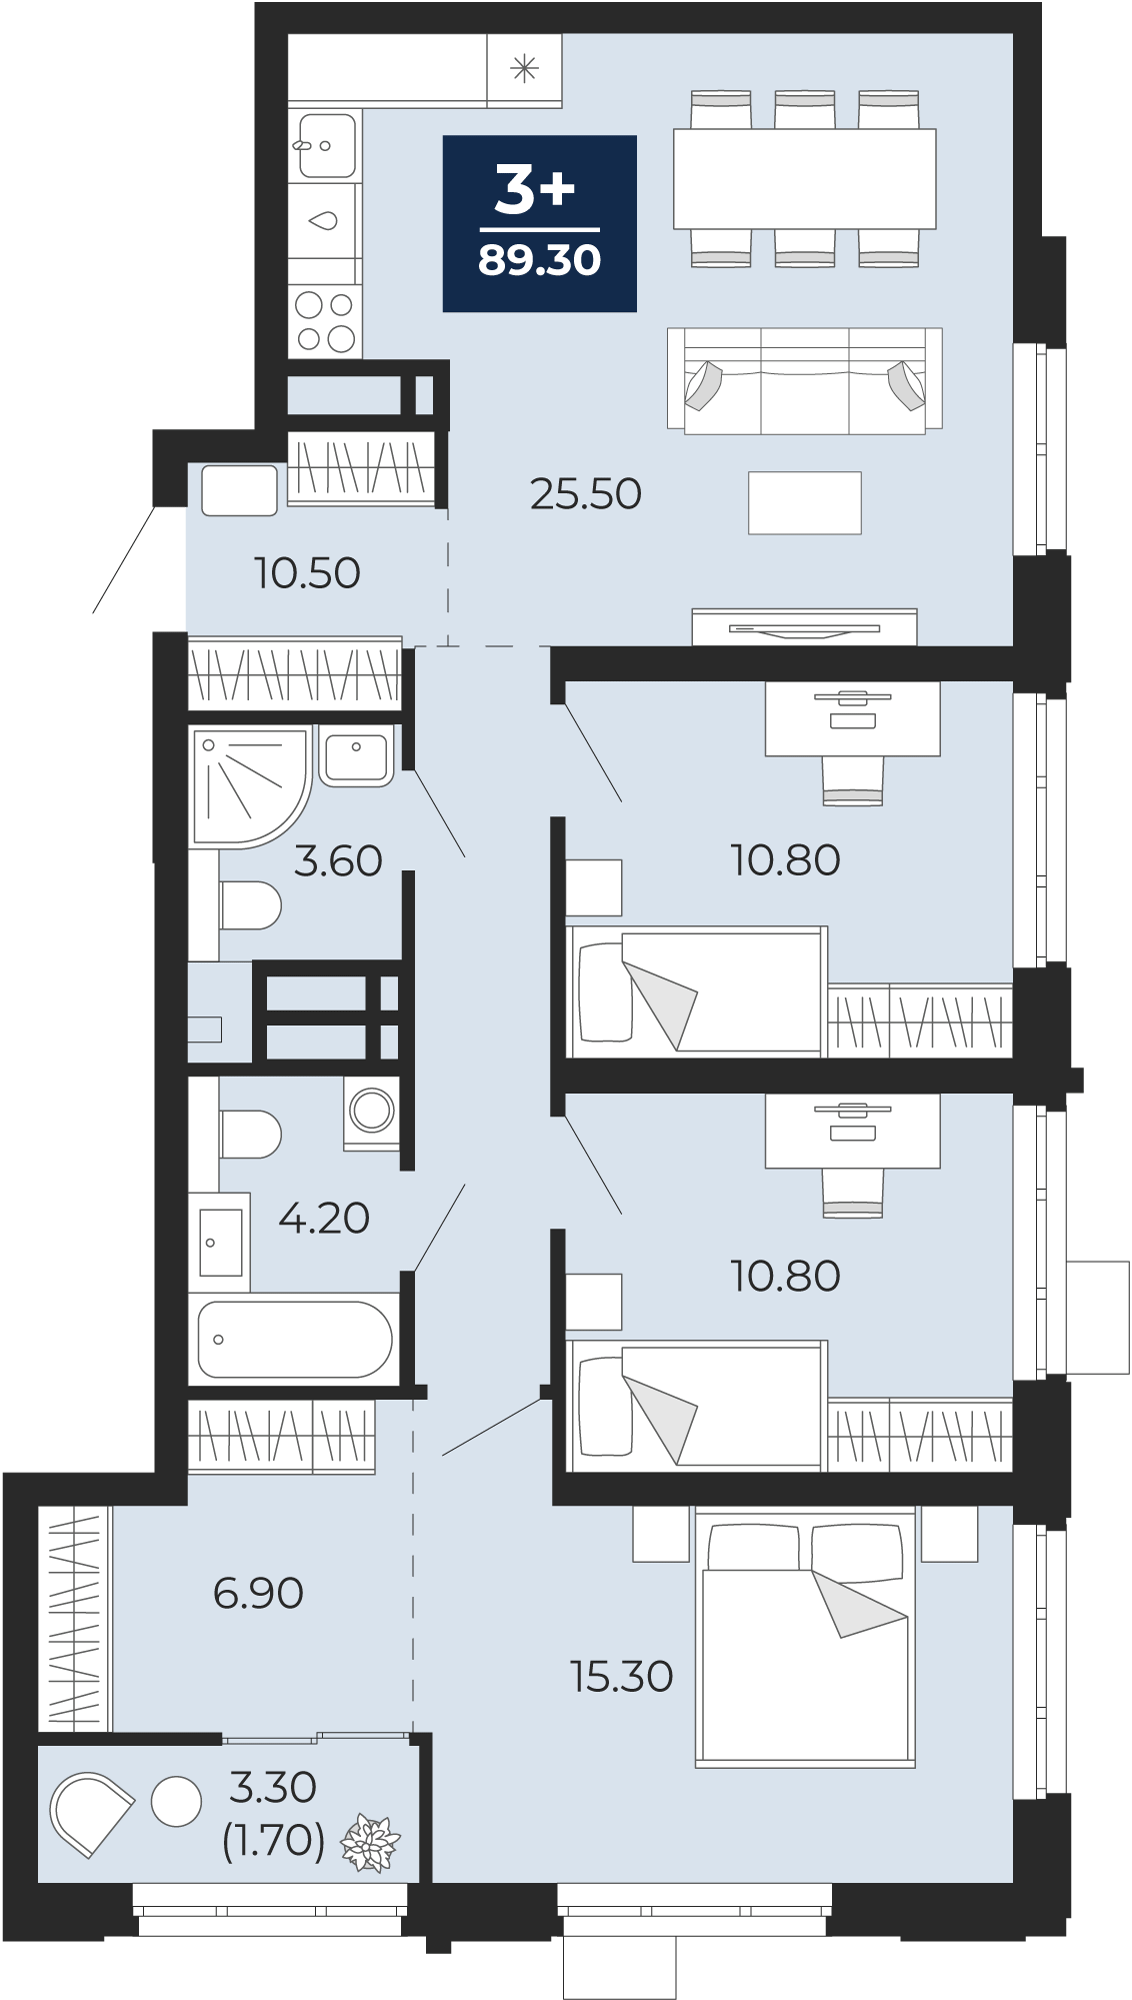 Квартира № 124, 3-комнатная, 89.3 кв. м, 6 этаж